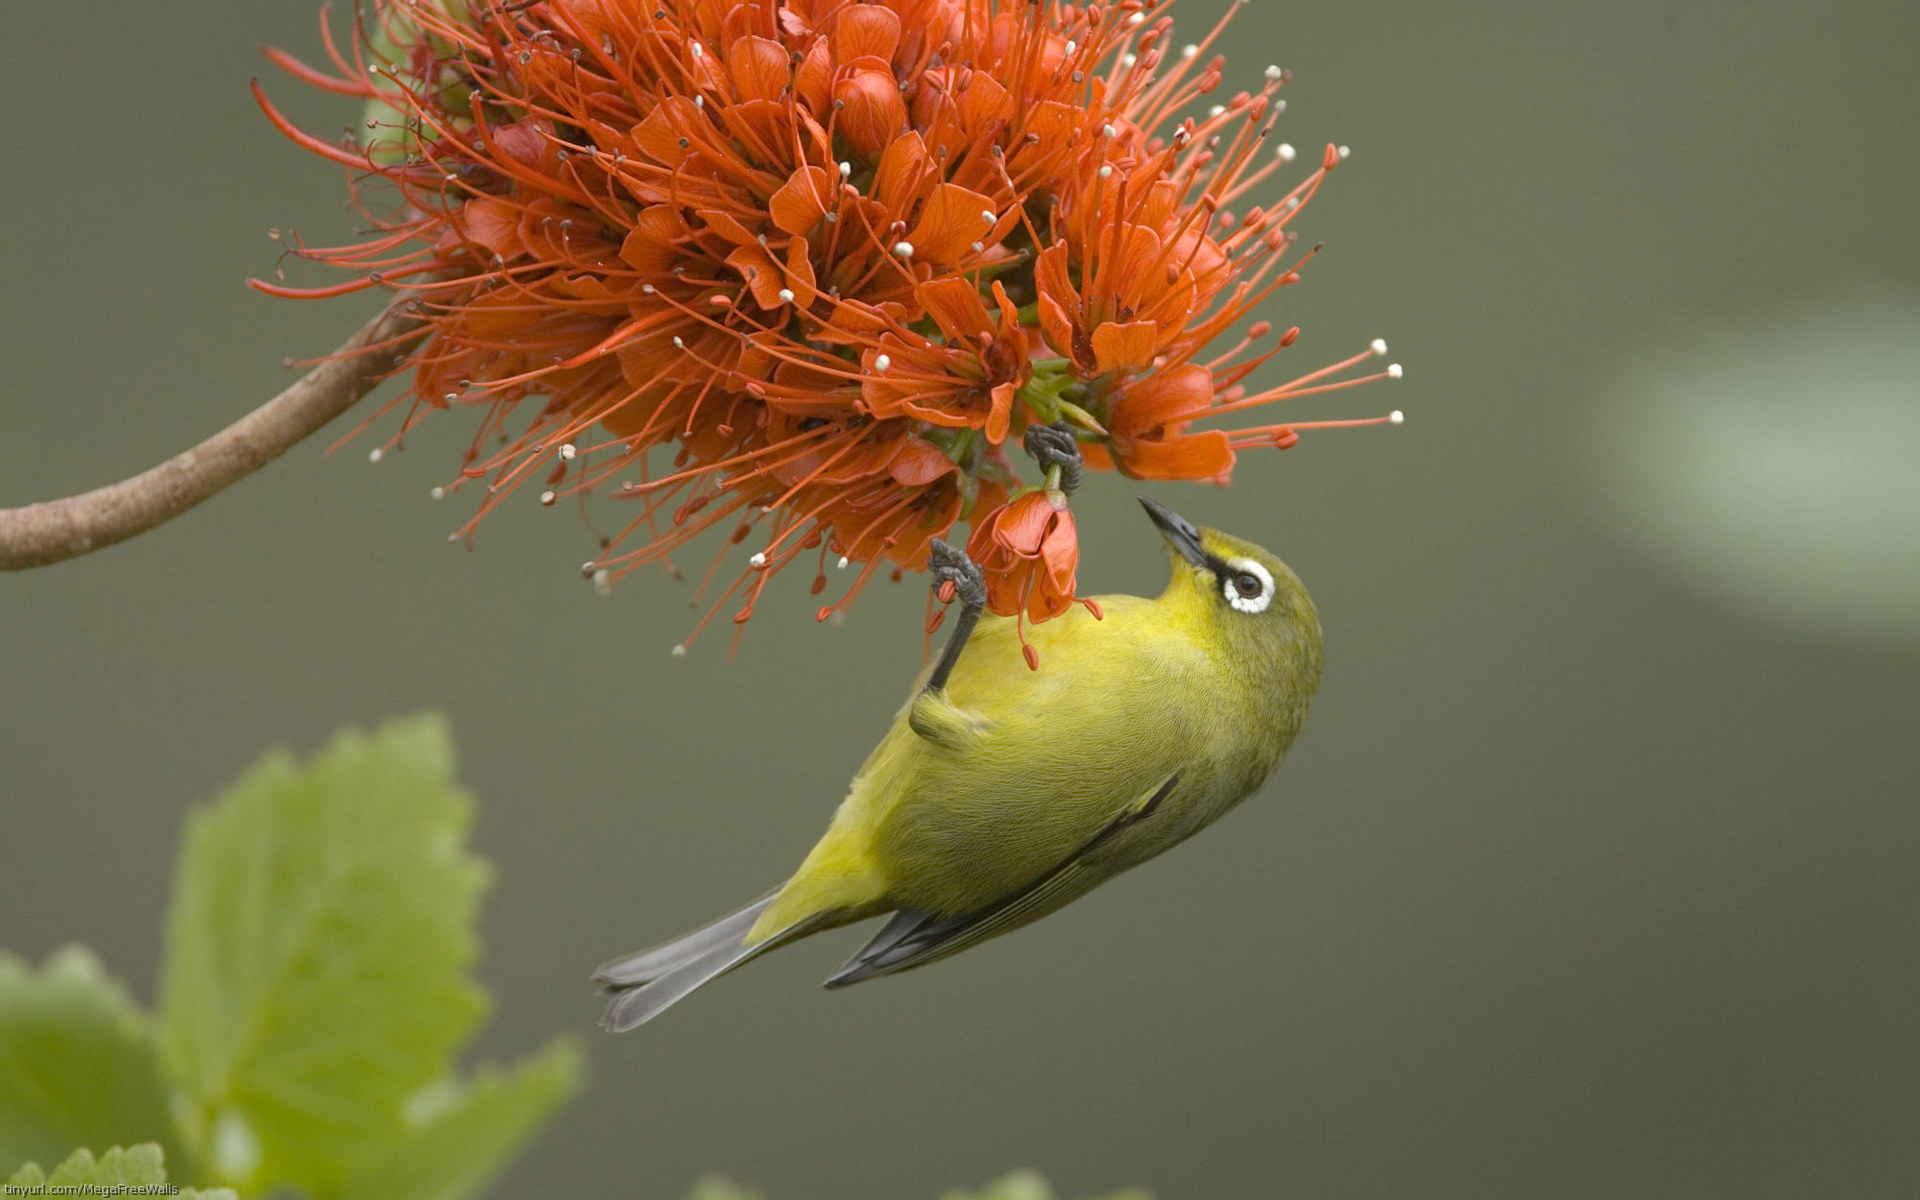 Tải 25 hình ảnh các loài chim đẹp nhất thế giới - [Kích thước hình ảnh: 1920x1200 px]